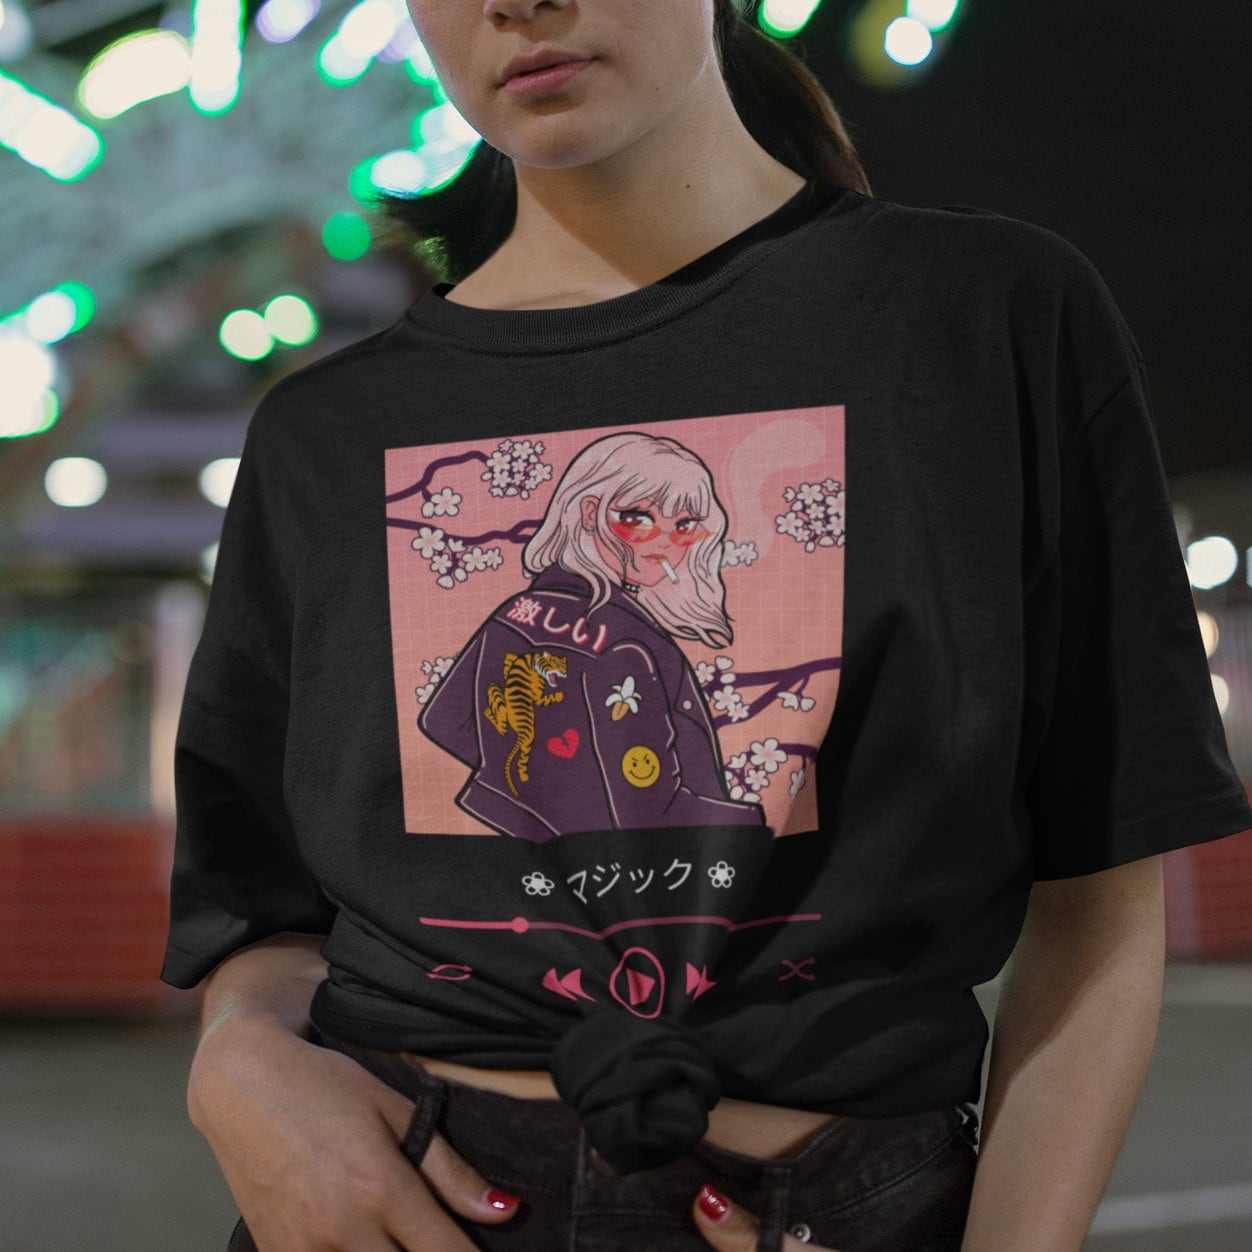  Anime Girl Japanese Aesthetic anime Otaku T-Shirt : Clothing,  Shoes & Jewelry